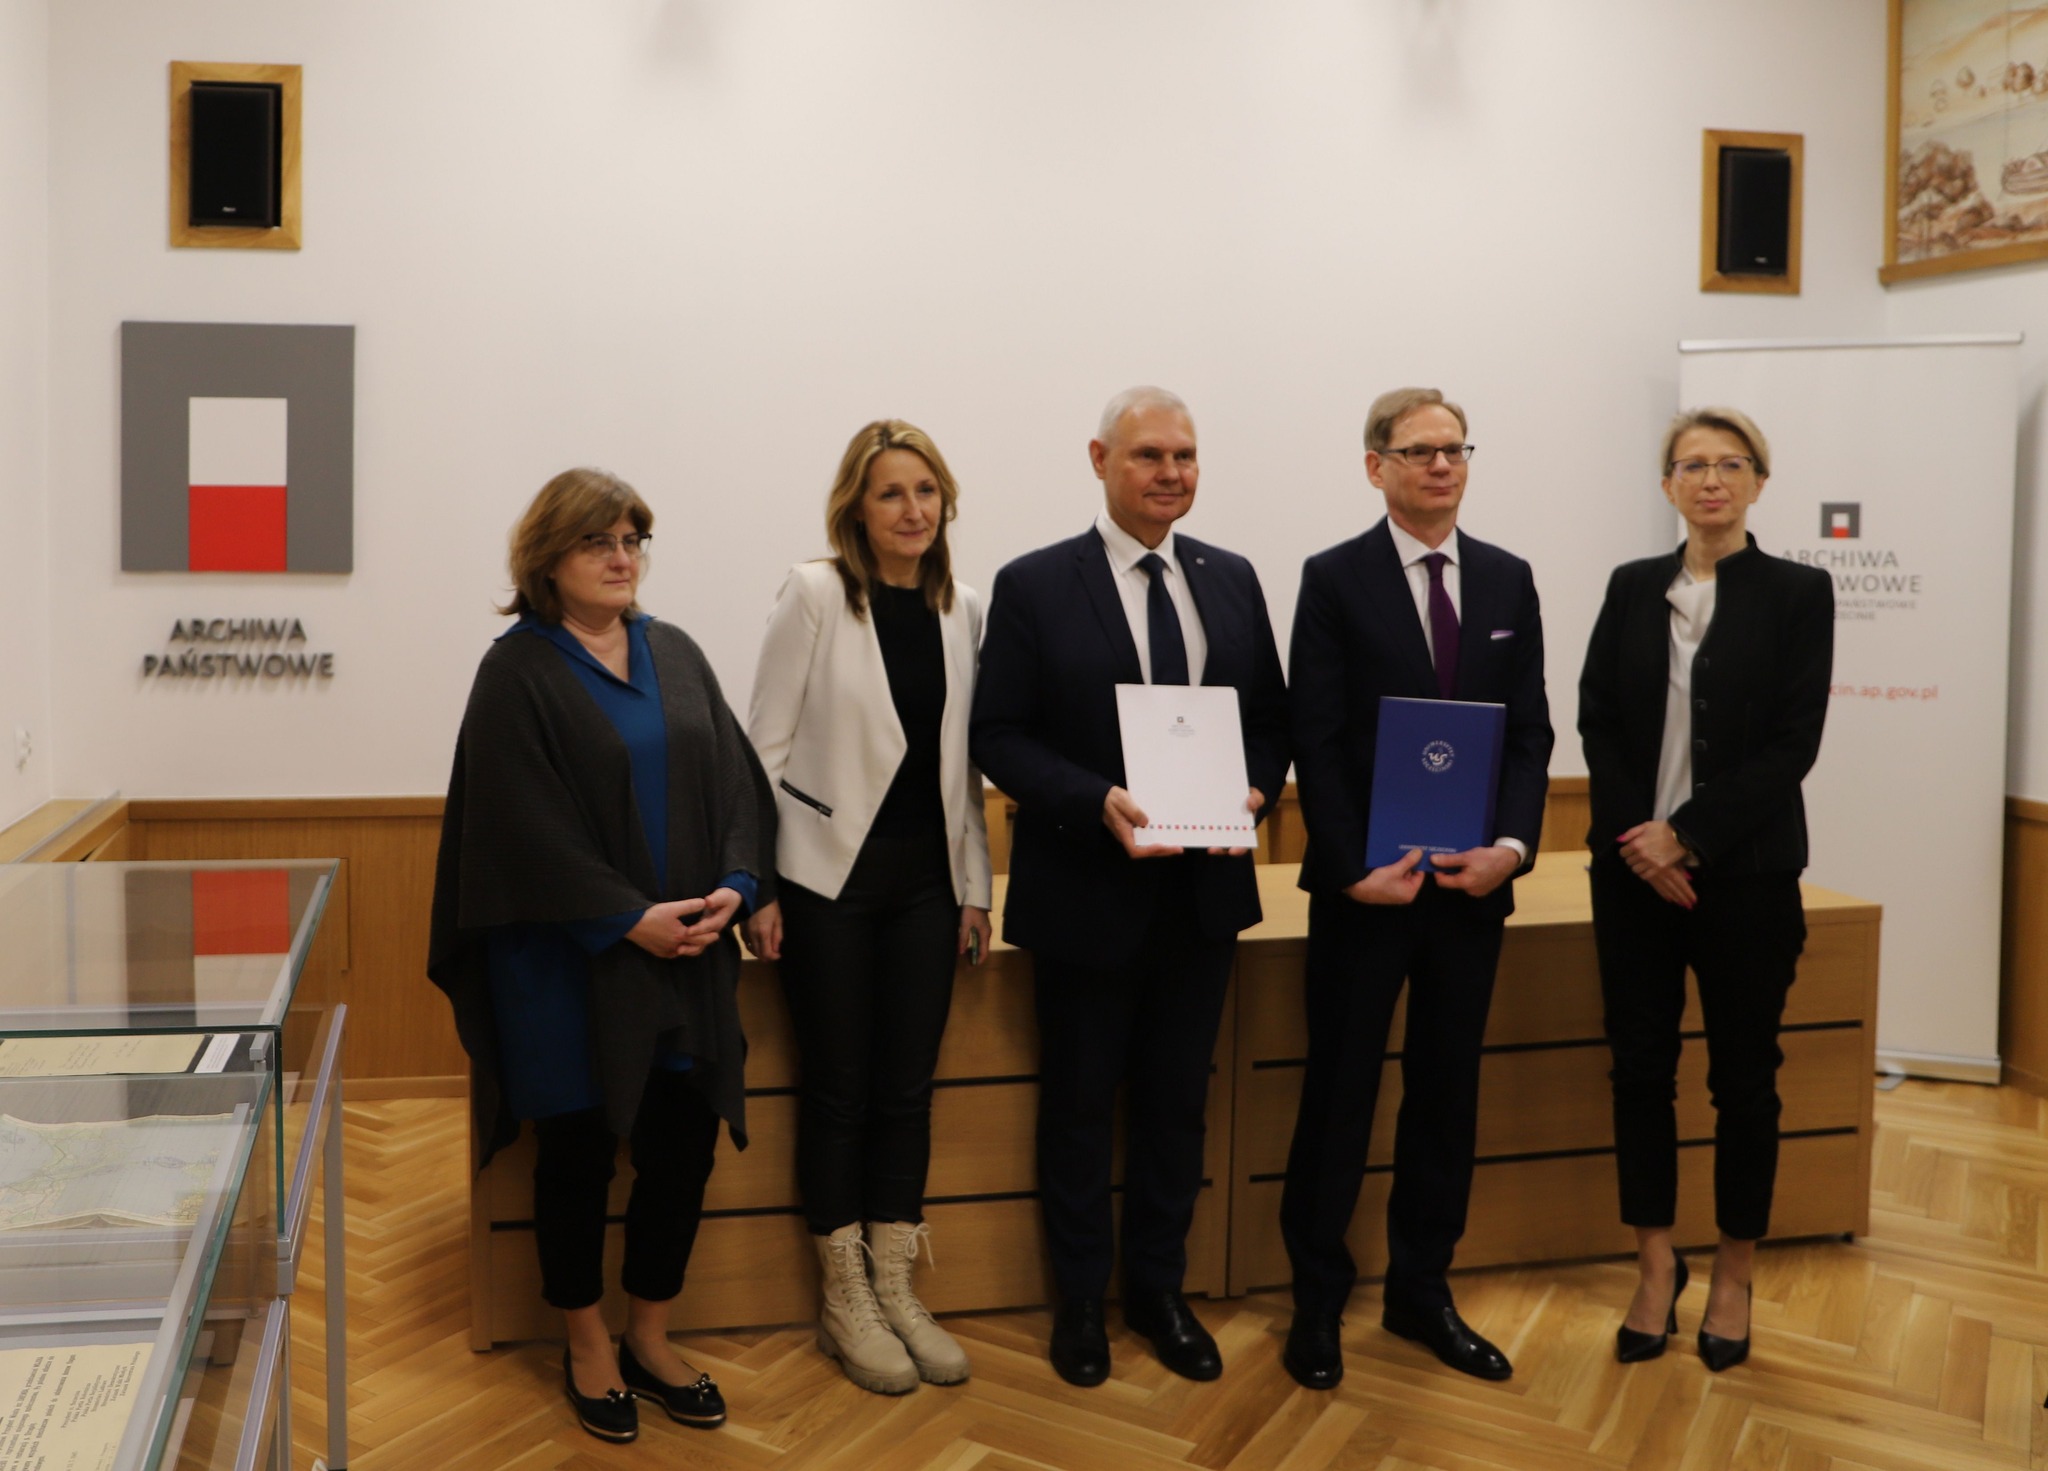 Porozumienie o współpracy pomiędzy Archiwum Państwowym w Szczecinie a Uniwersytetem Szczecińskim